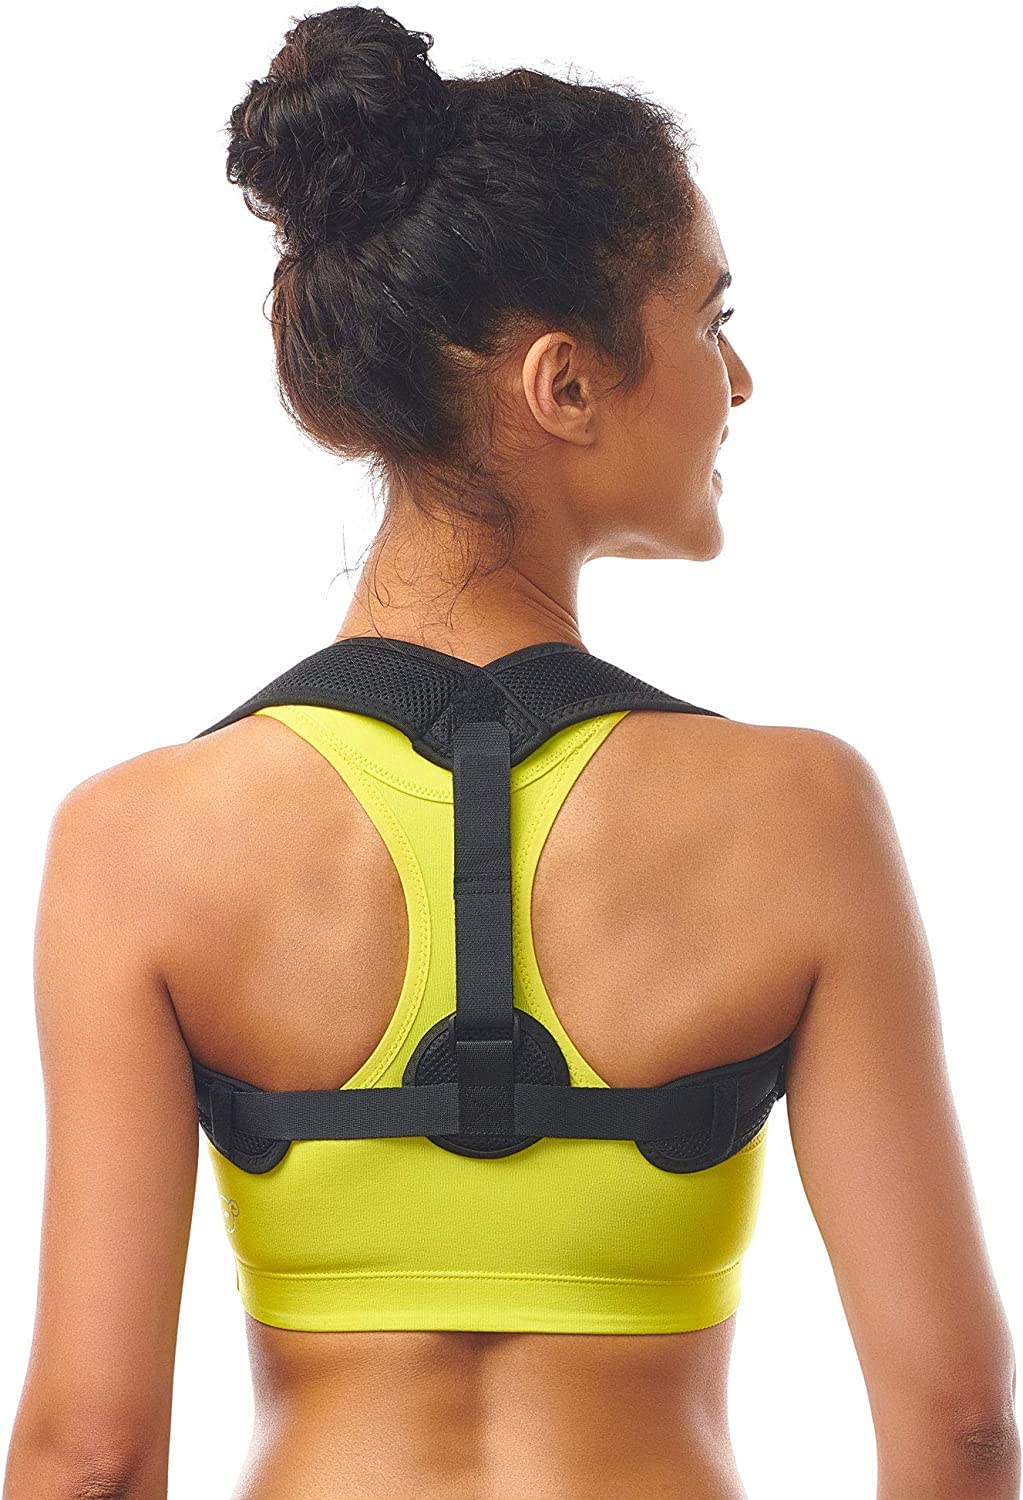 Posture Corrector for Women Men - Posture Brace - Adjustable Back